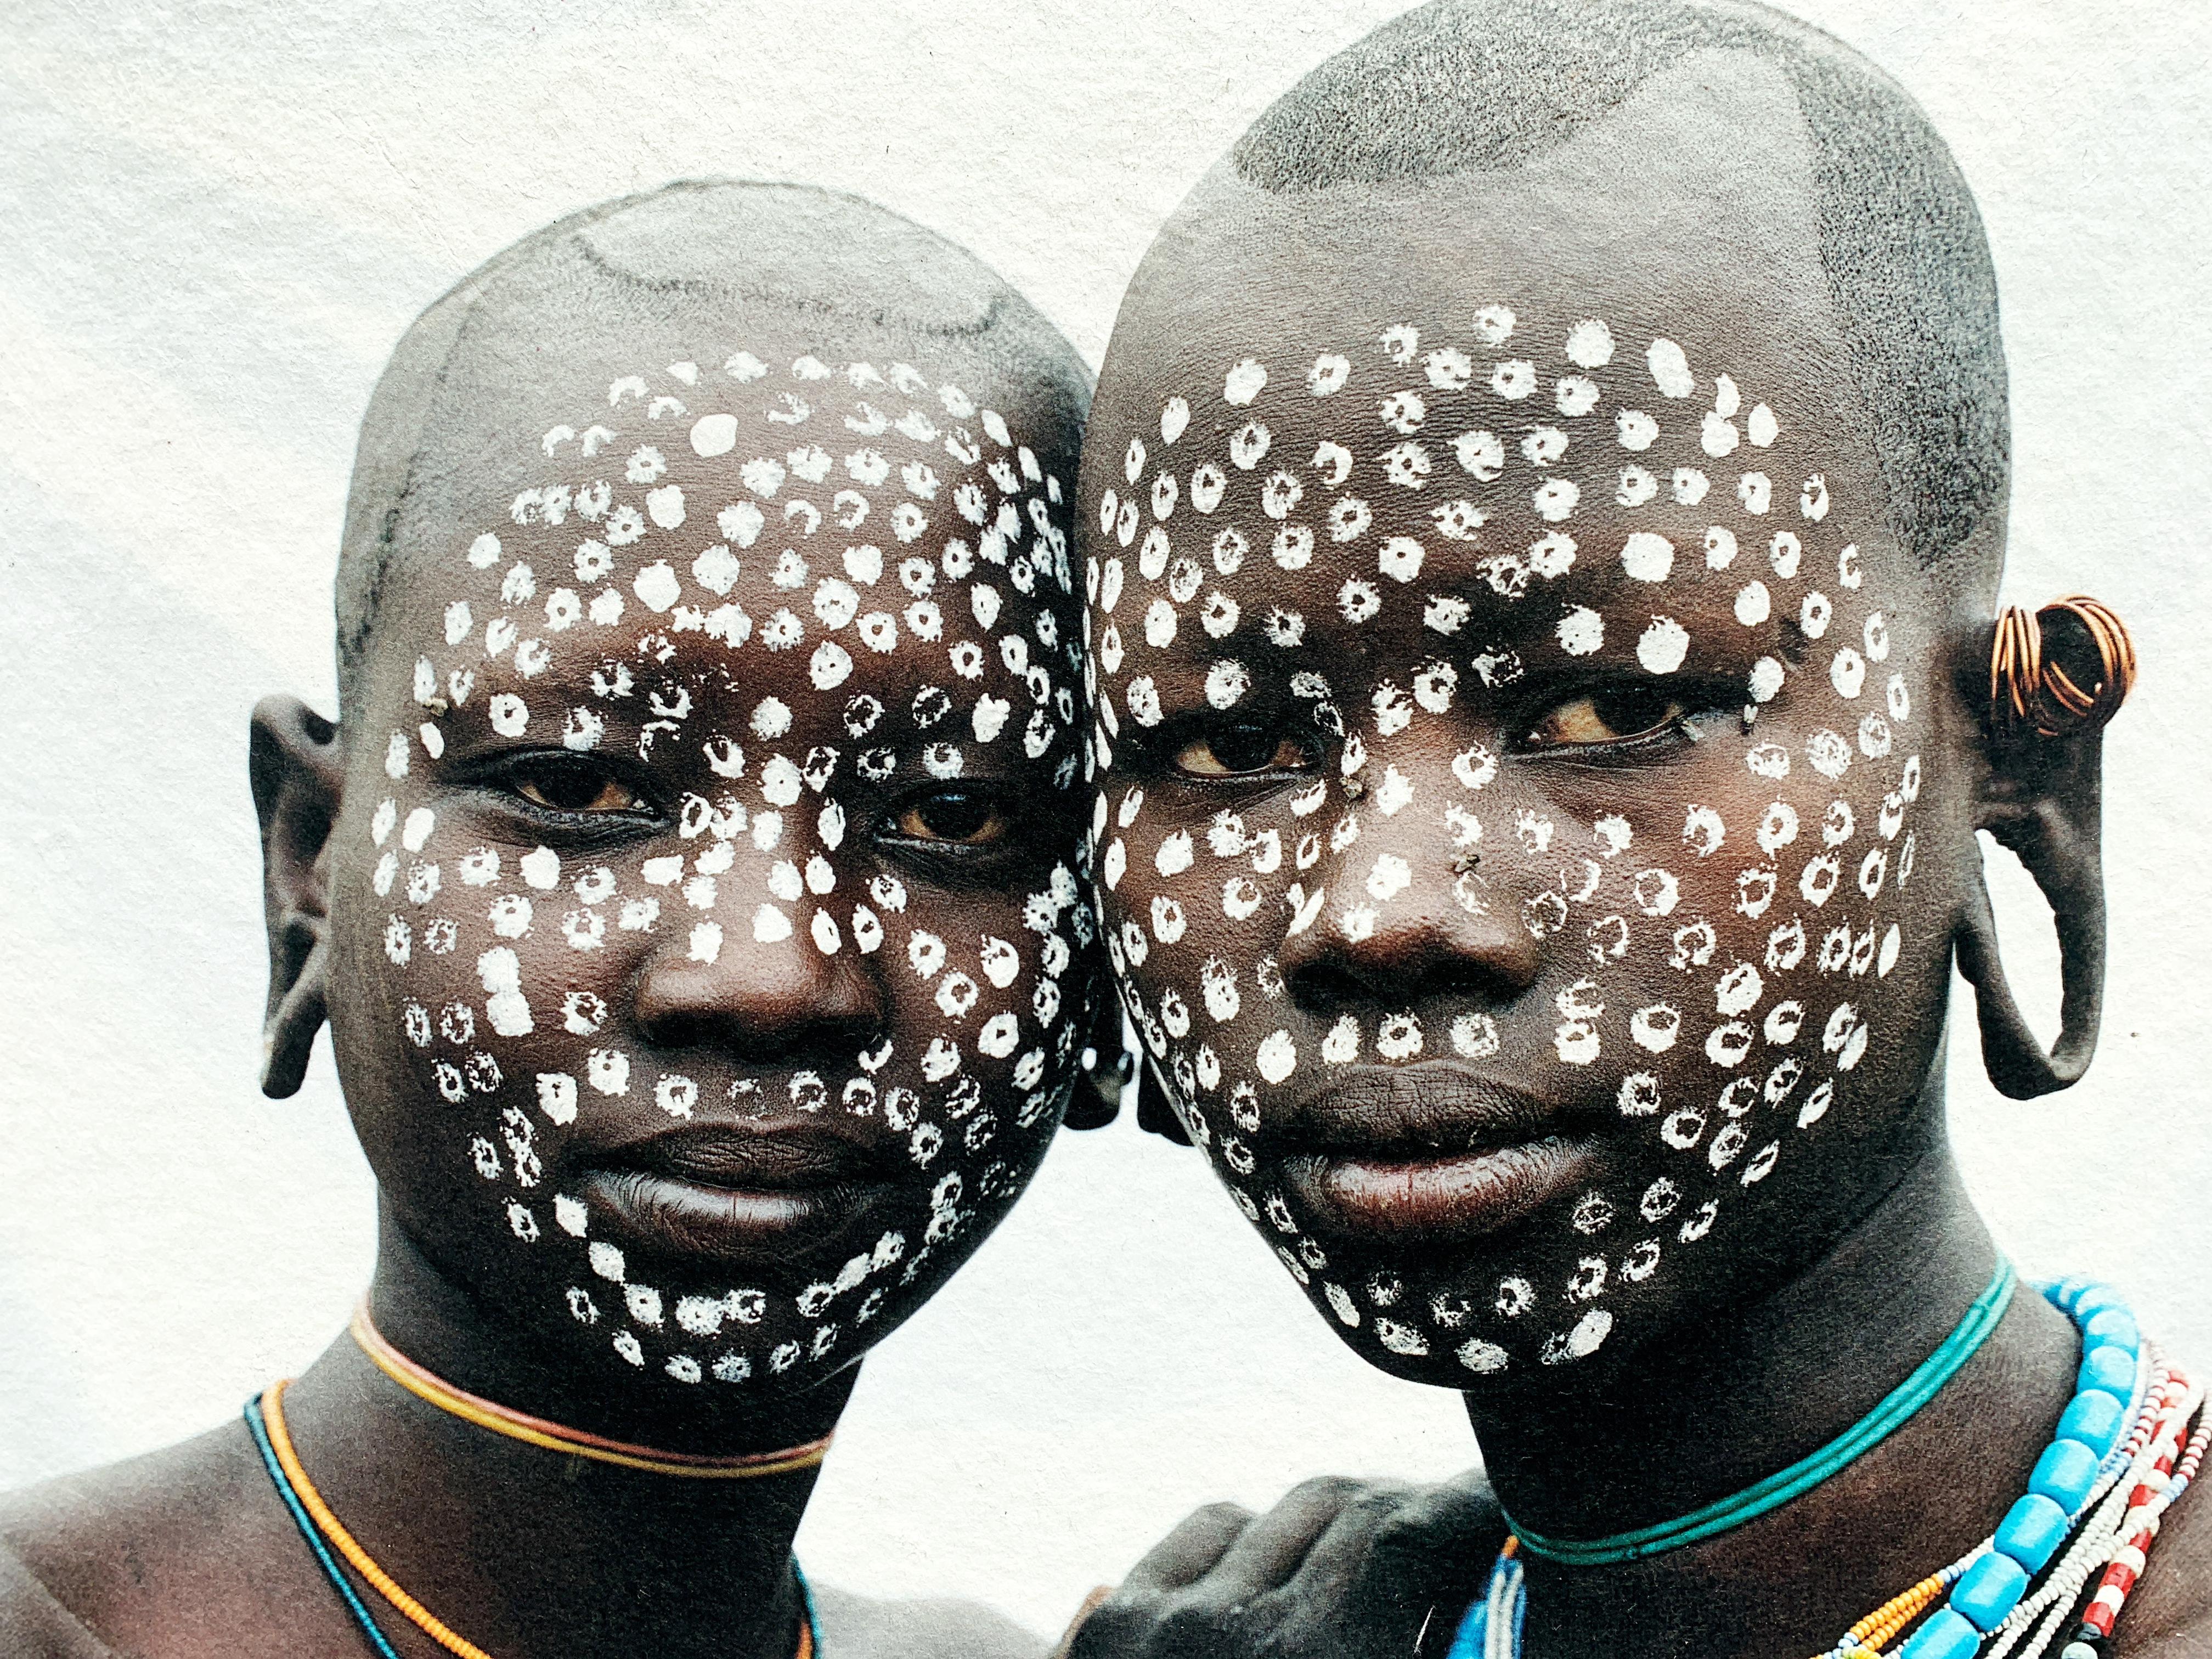 Bemalte Gesichter, Stammesfrauen Äthiopiens, Afrika, Fotografie auf japanischem Papier  – Photograph von Jean-Michel Voge